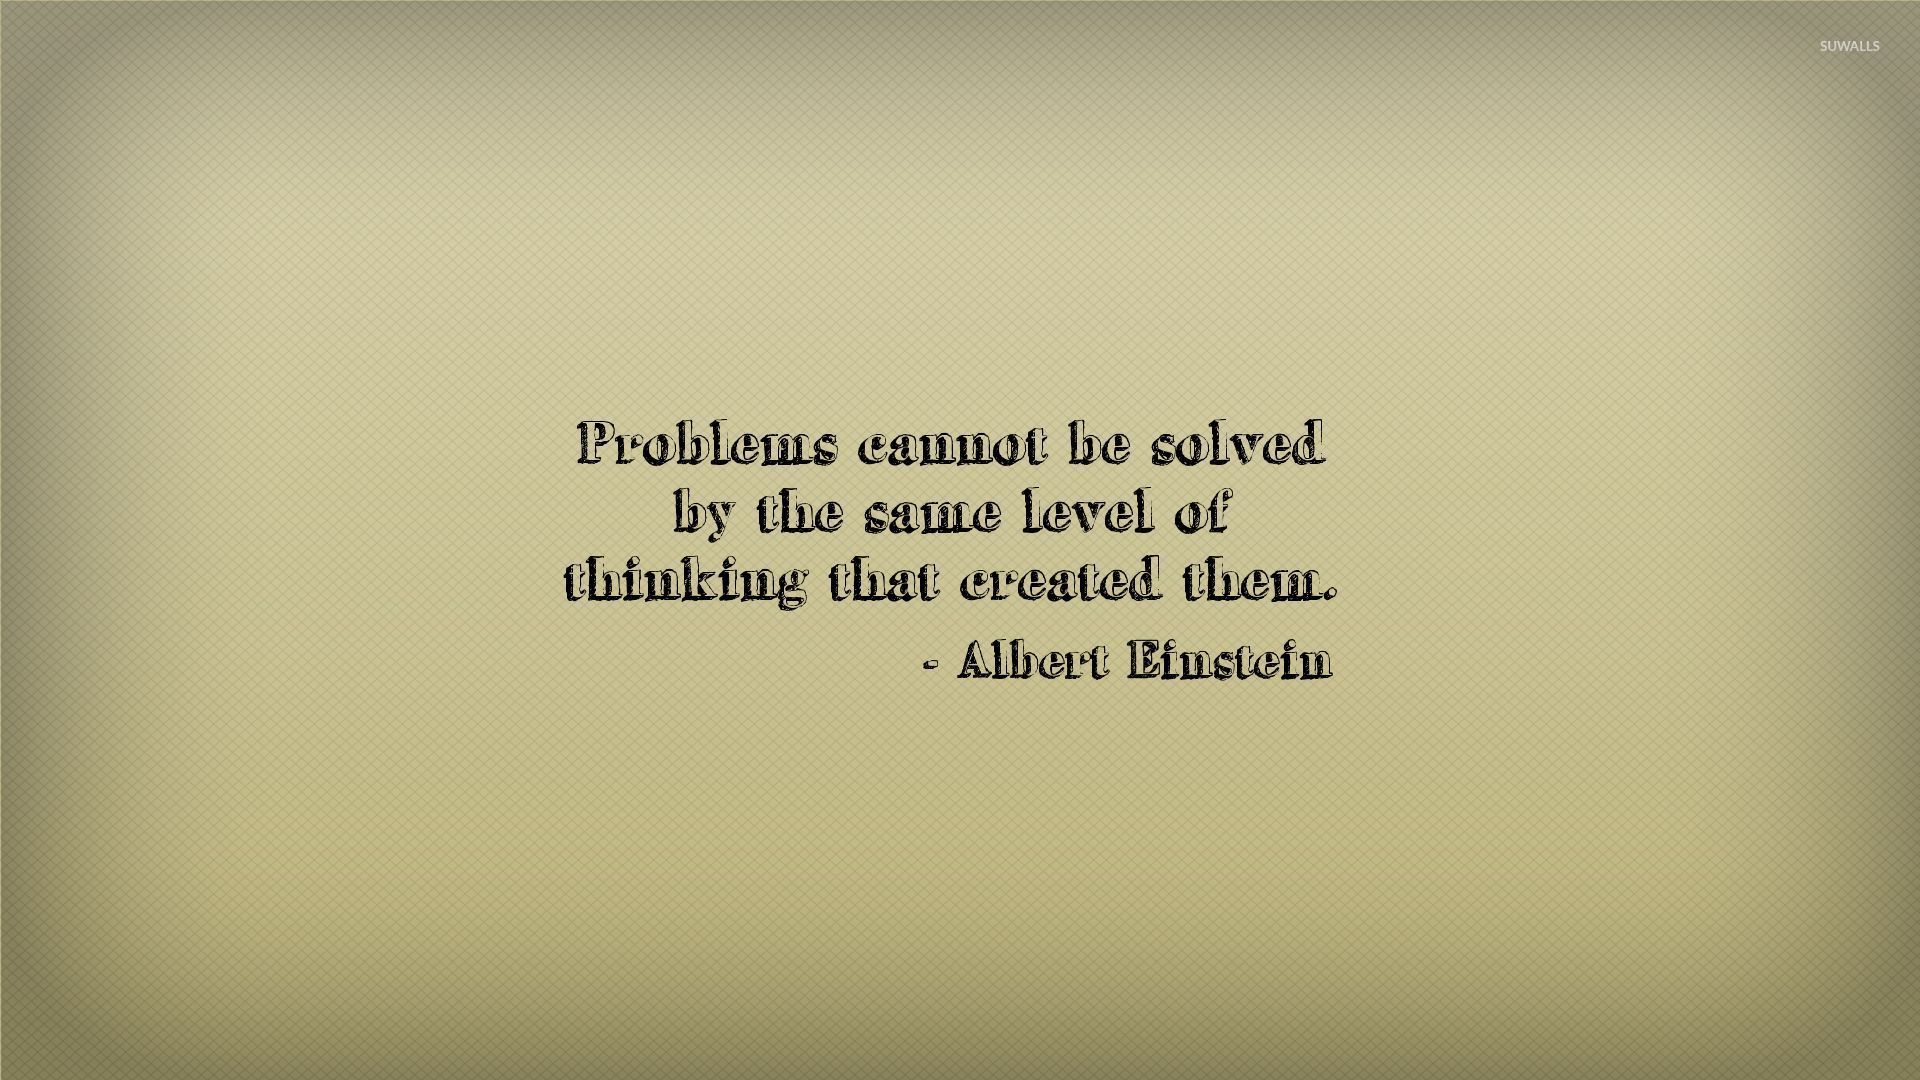 Albert Einstein quote wallpaper wallpaper